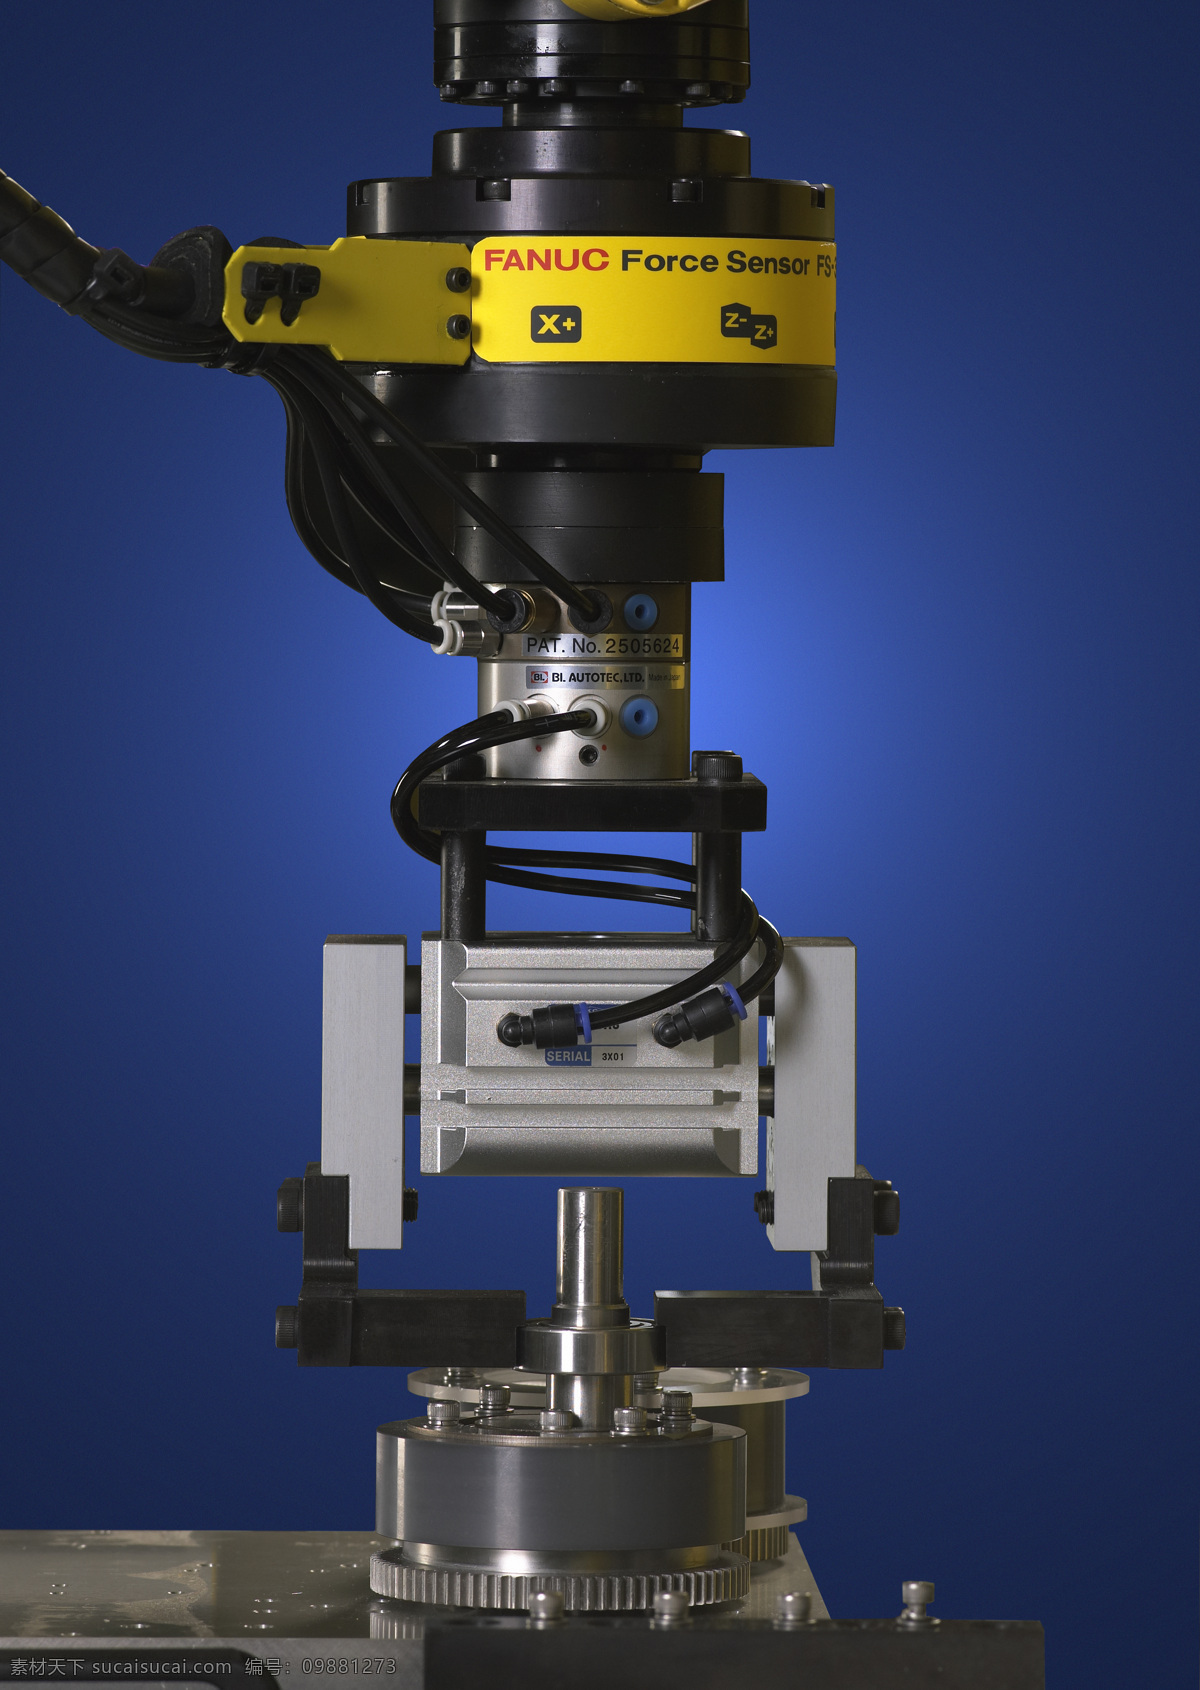 机器人 自动化 视觉系统 机械手臂 平面图片 工业生产 现代科技